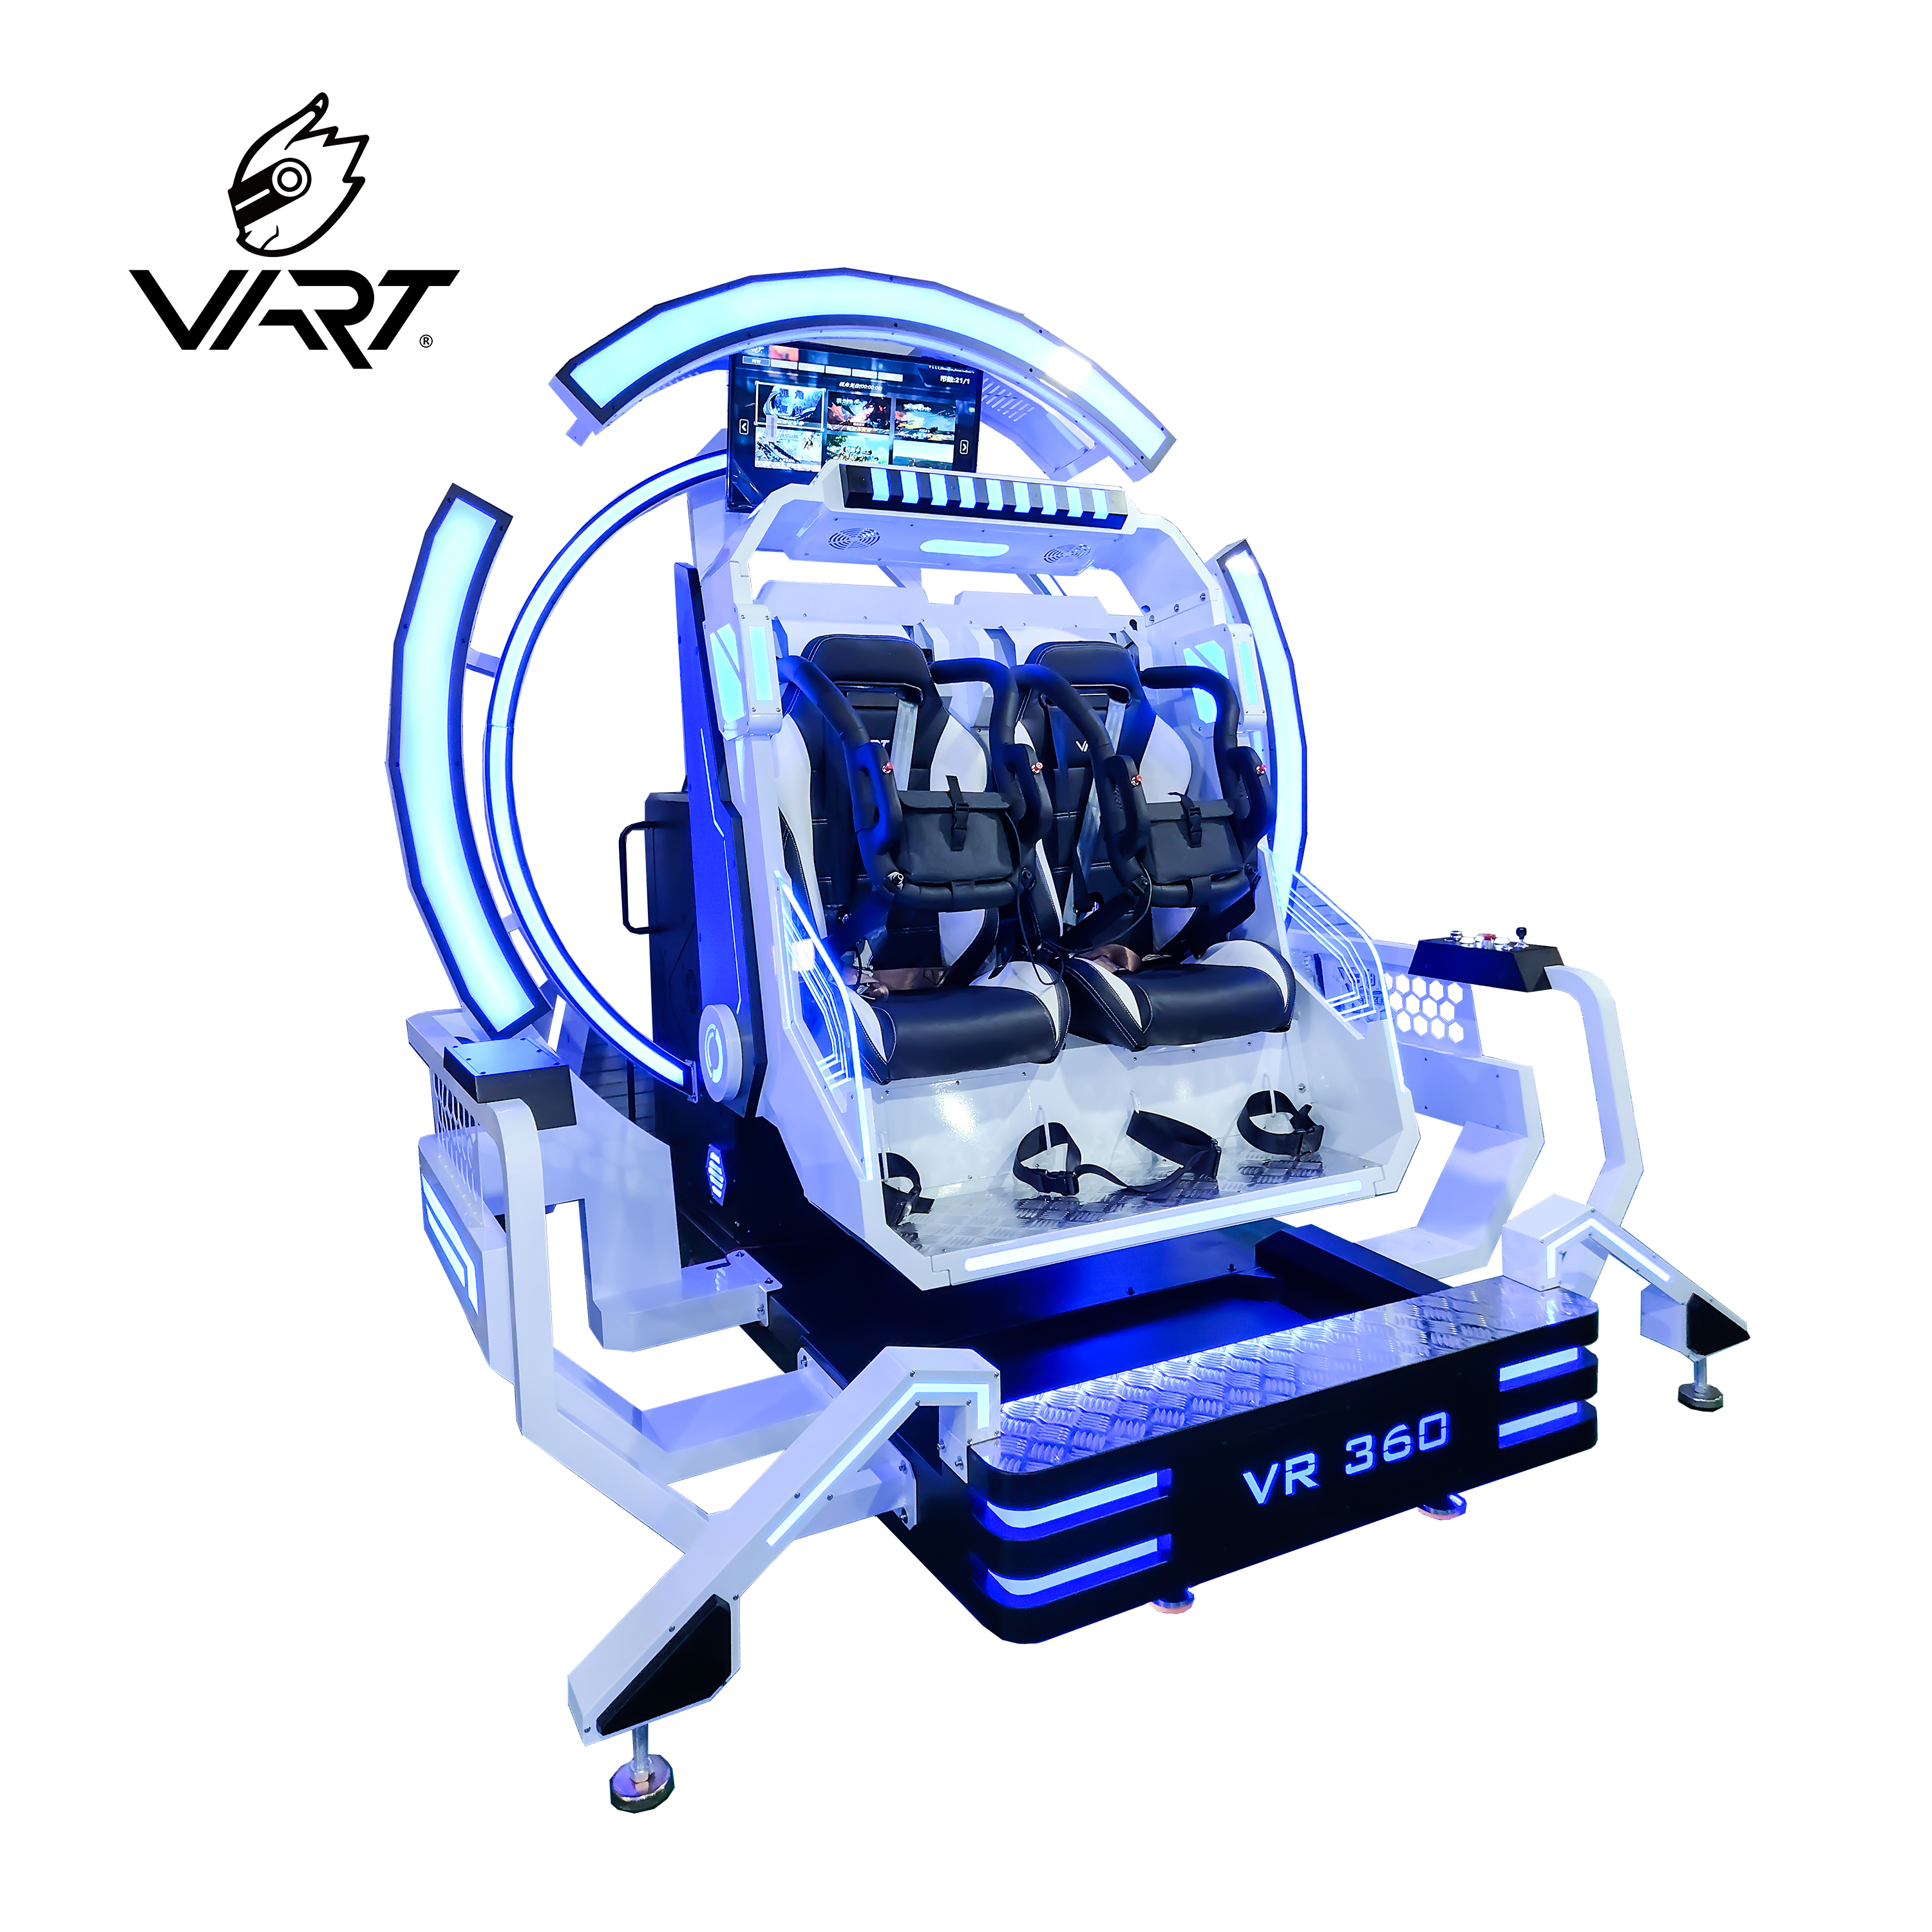 Krzesło VART 2-osobowe VR 360 Polecane zdjęcie